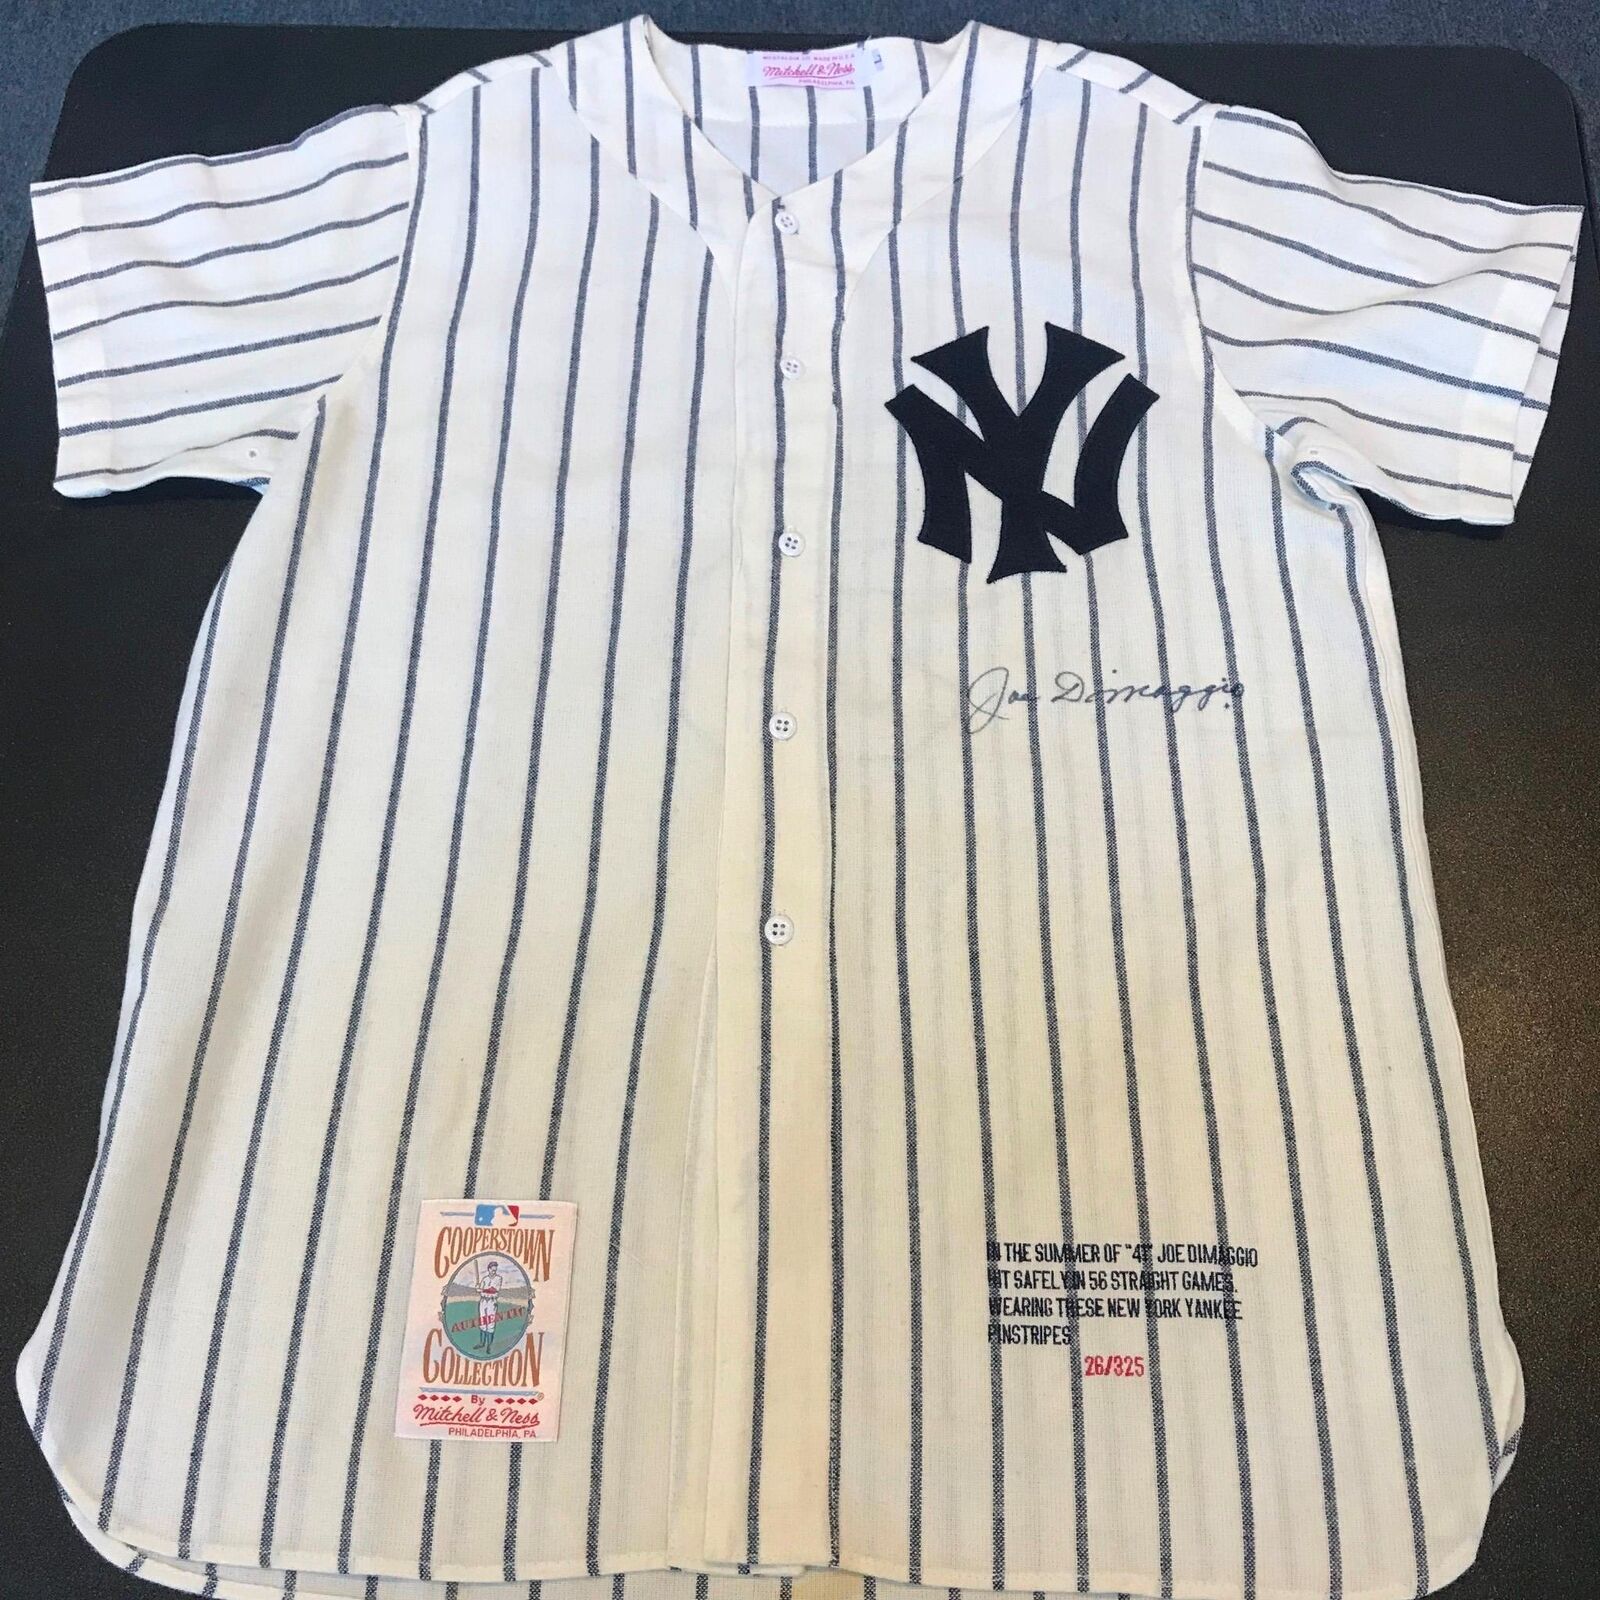 Beautiful Joe Dimaggio Signed 1941 New York Yankees Game Model